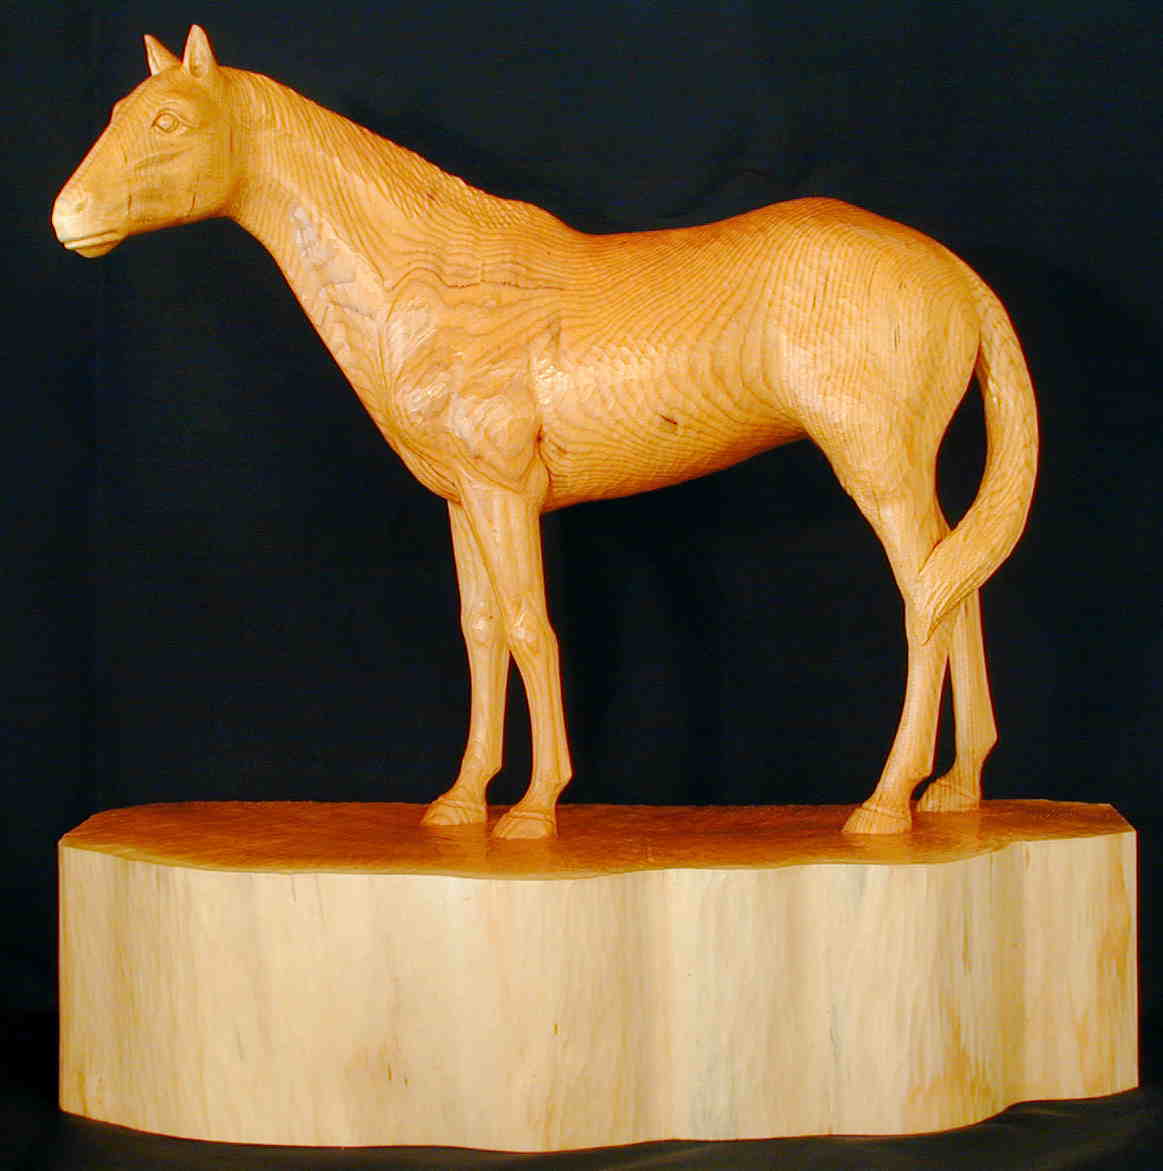 見事な 木彫り 馬 - インテリア雑貨 - reachahand.org